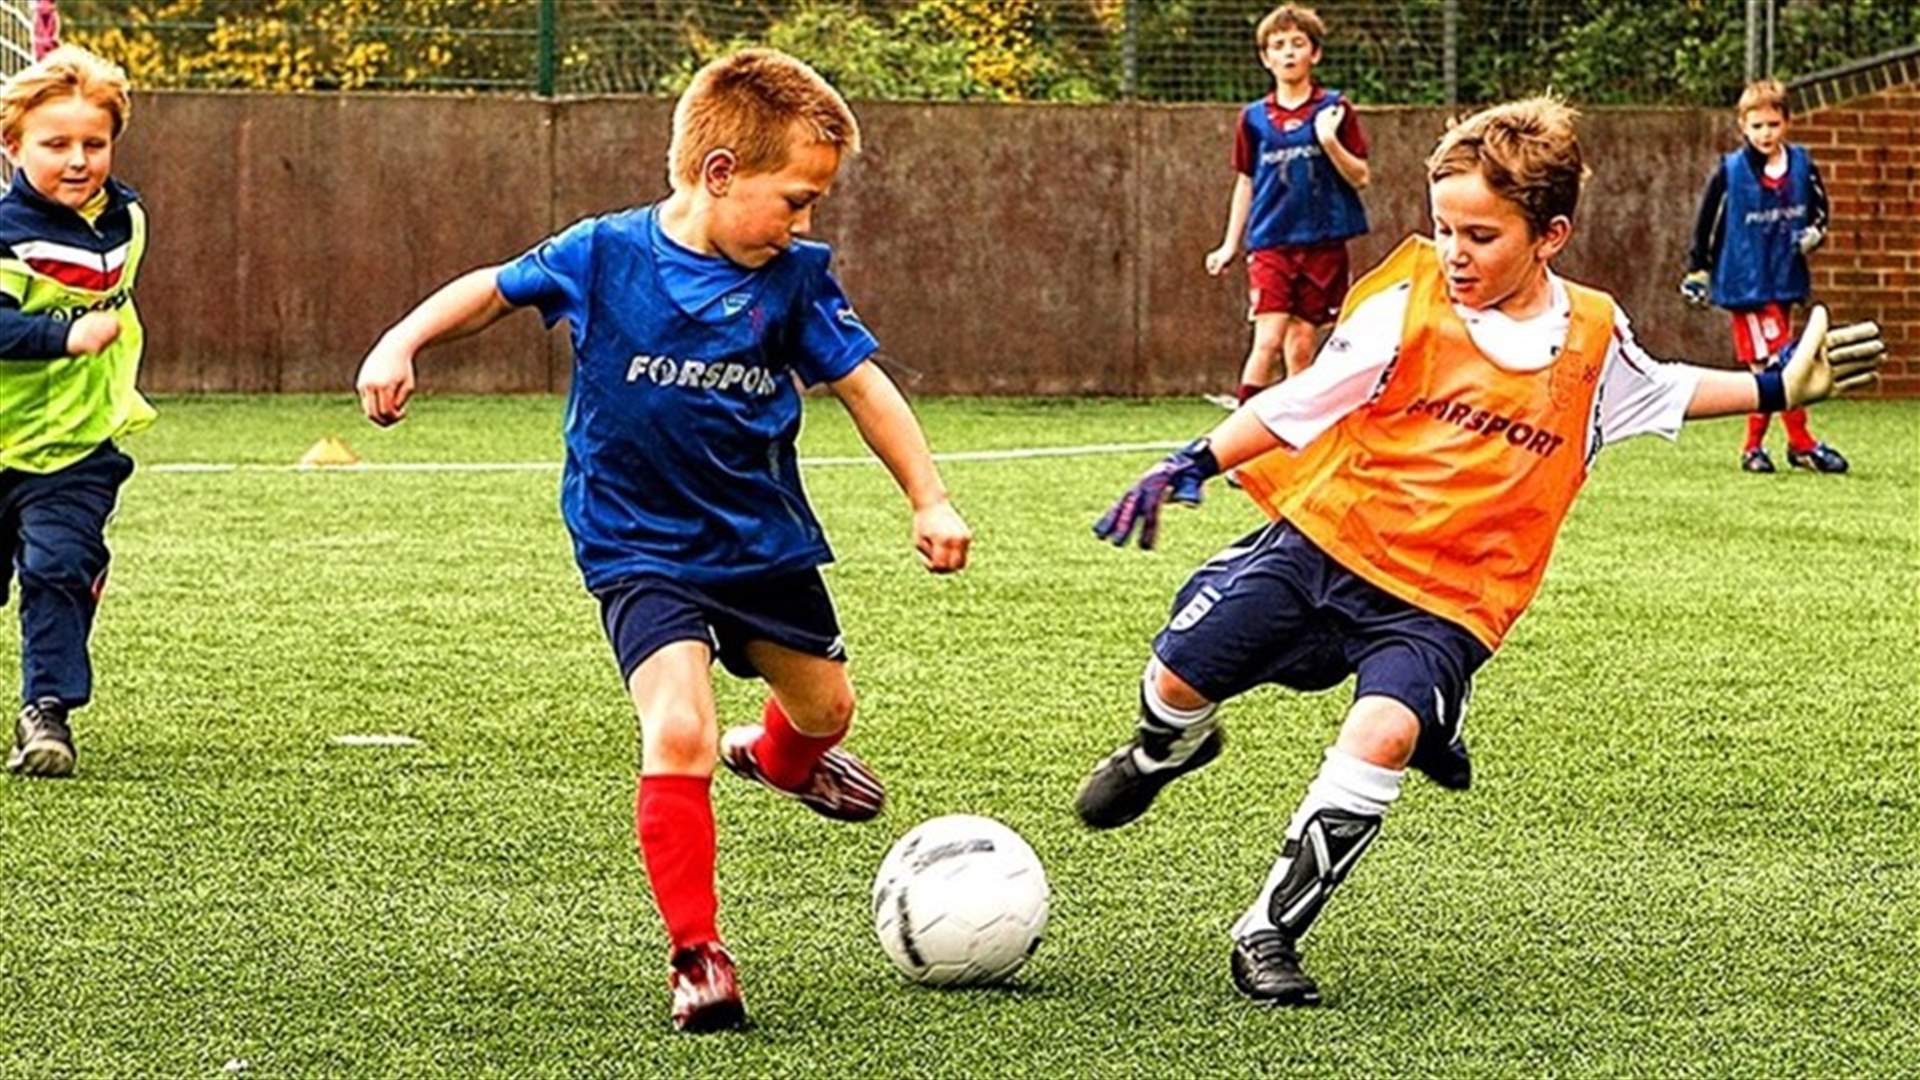 الاتحاد الانكليزي لكرة القدم يمنع ضرب الكرة بالرأس في المدارس